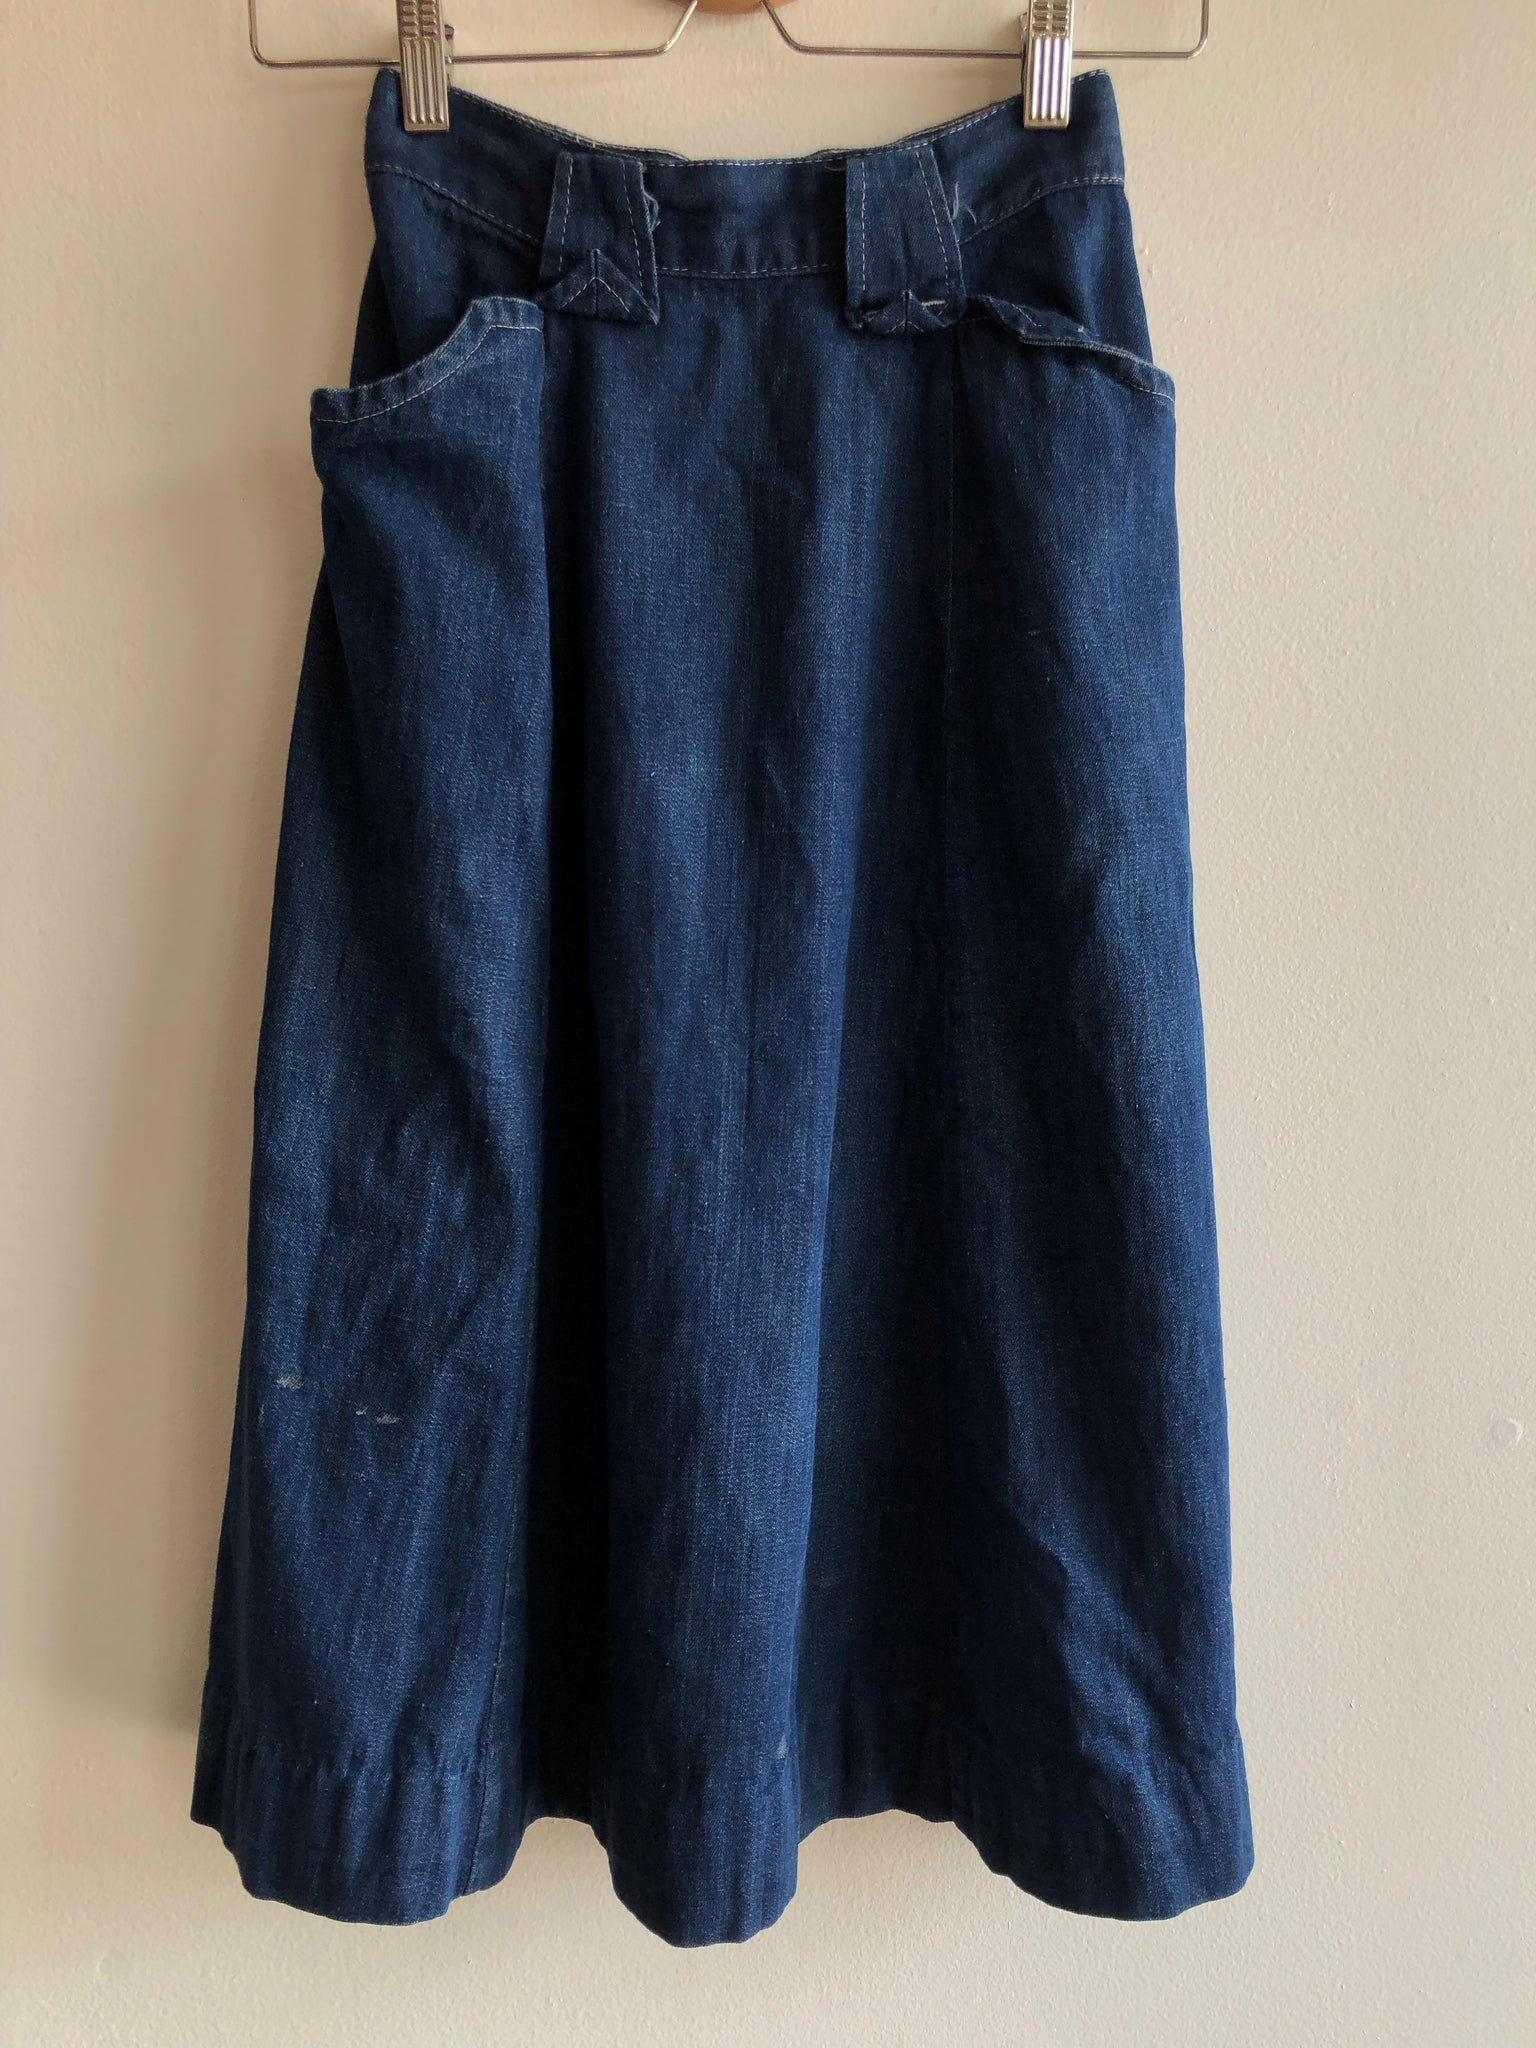 Vintage 1950’s Western Maid Side-Zip Denim Skirt